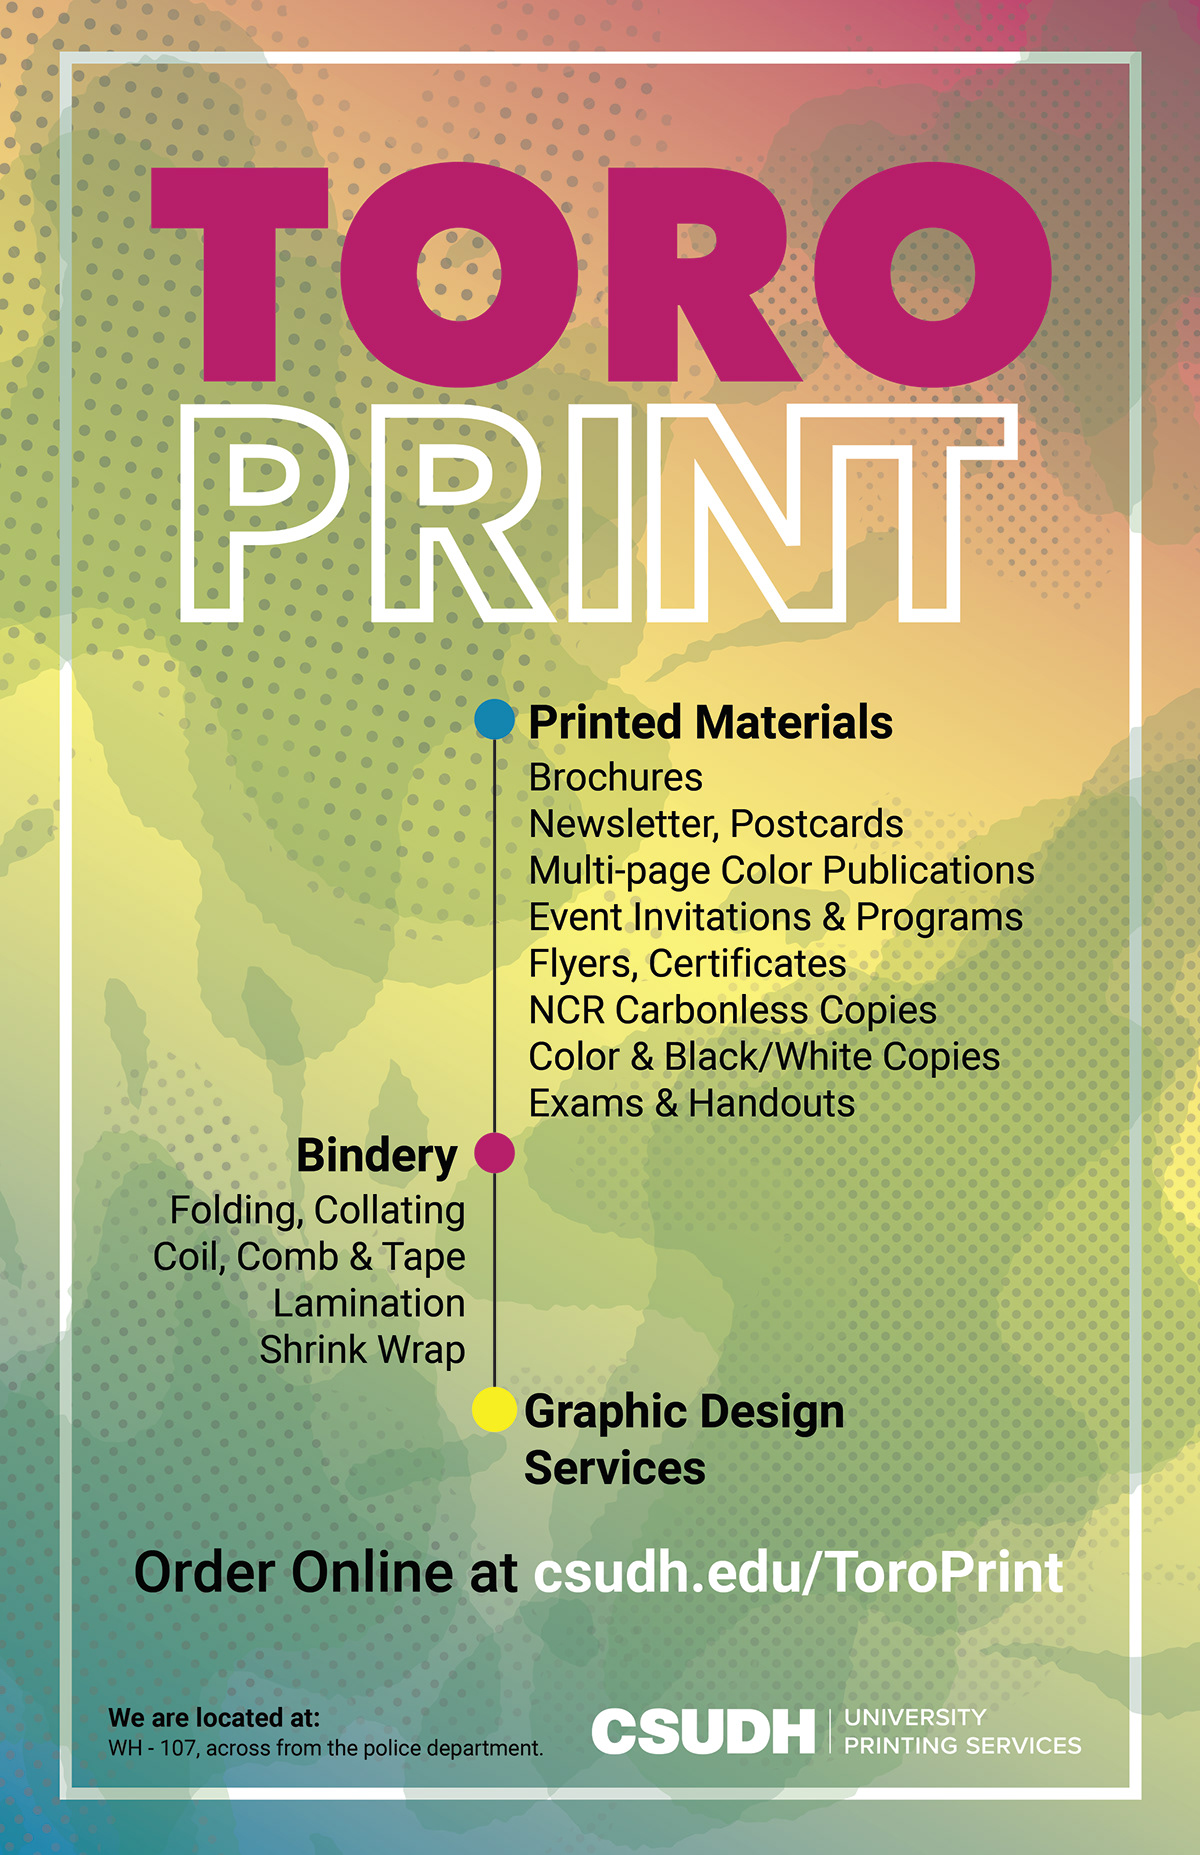 Omgivelser ordbog anker Print Shop Advertisement on Behance